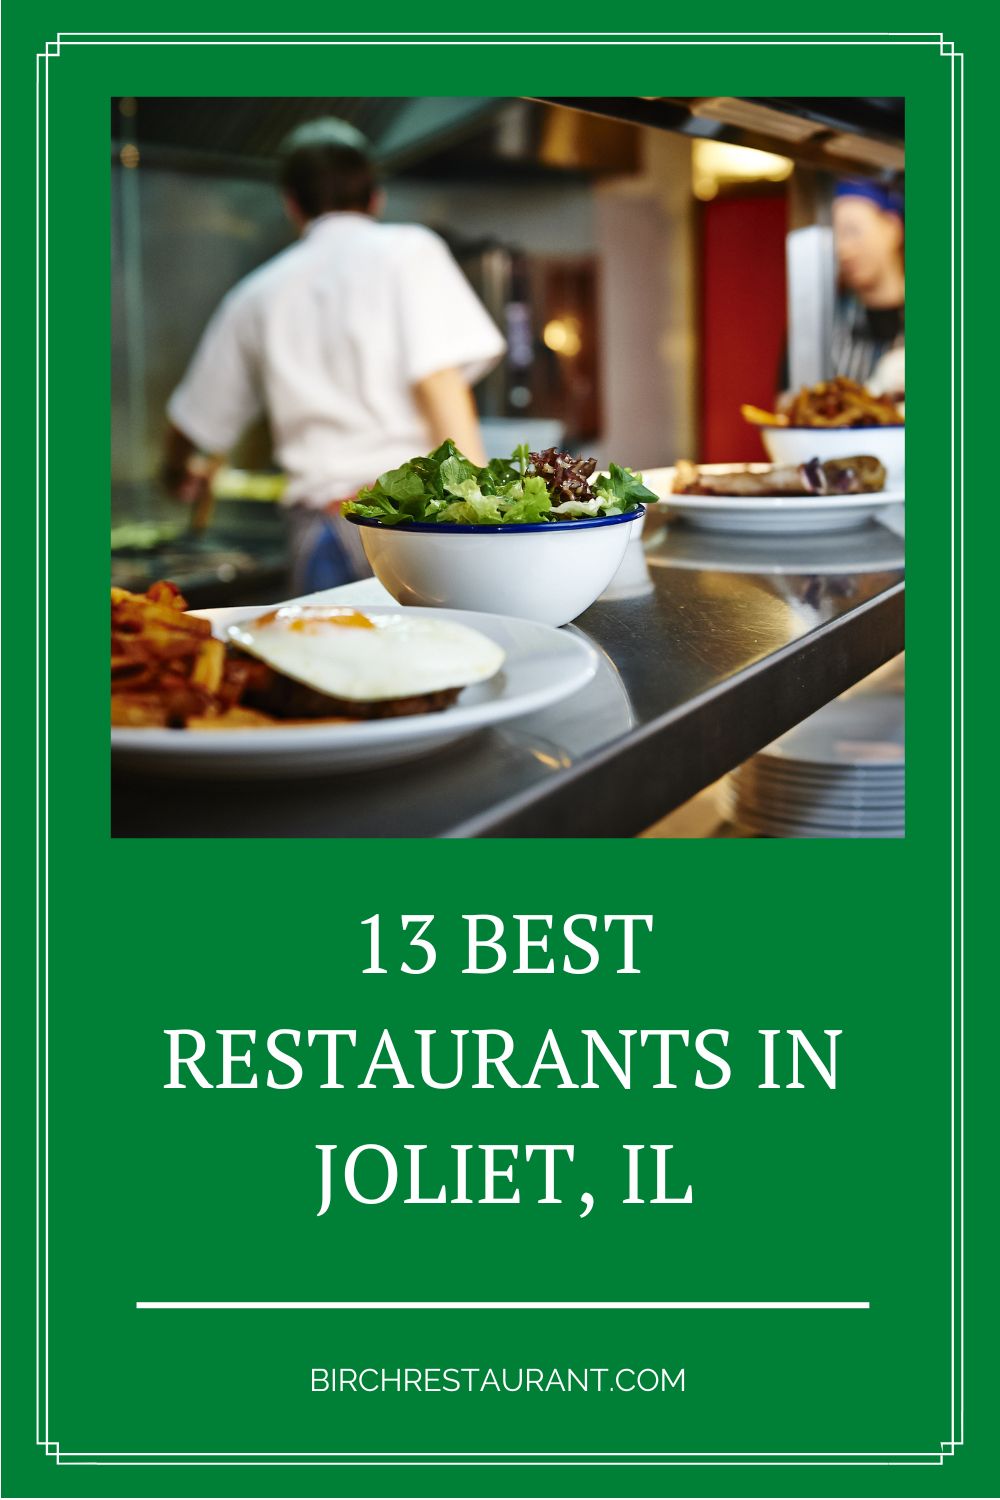 Best Restaurants in Joliet